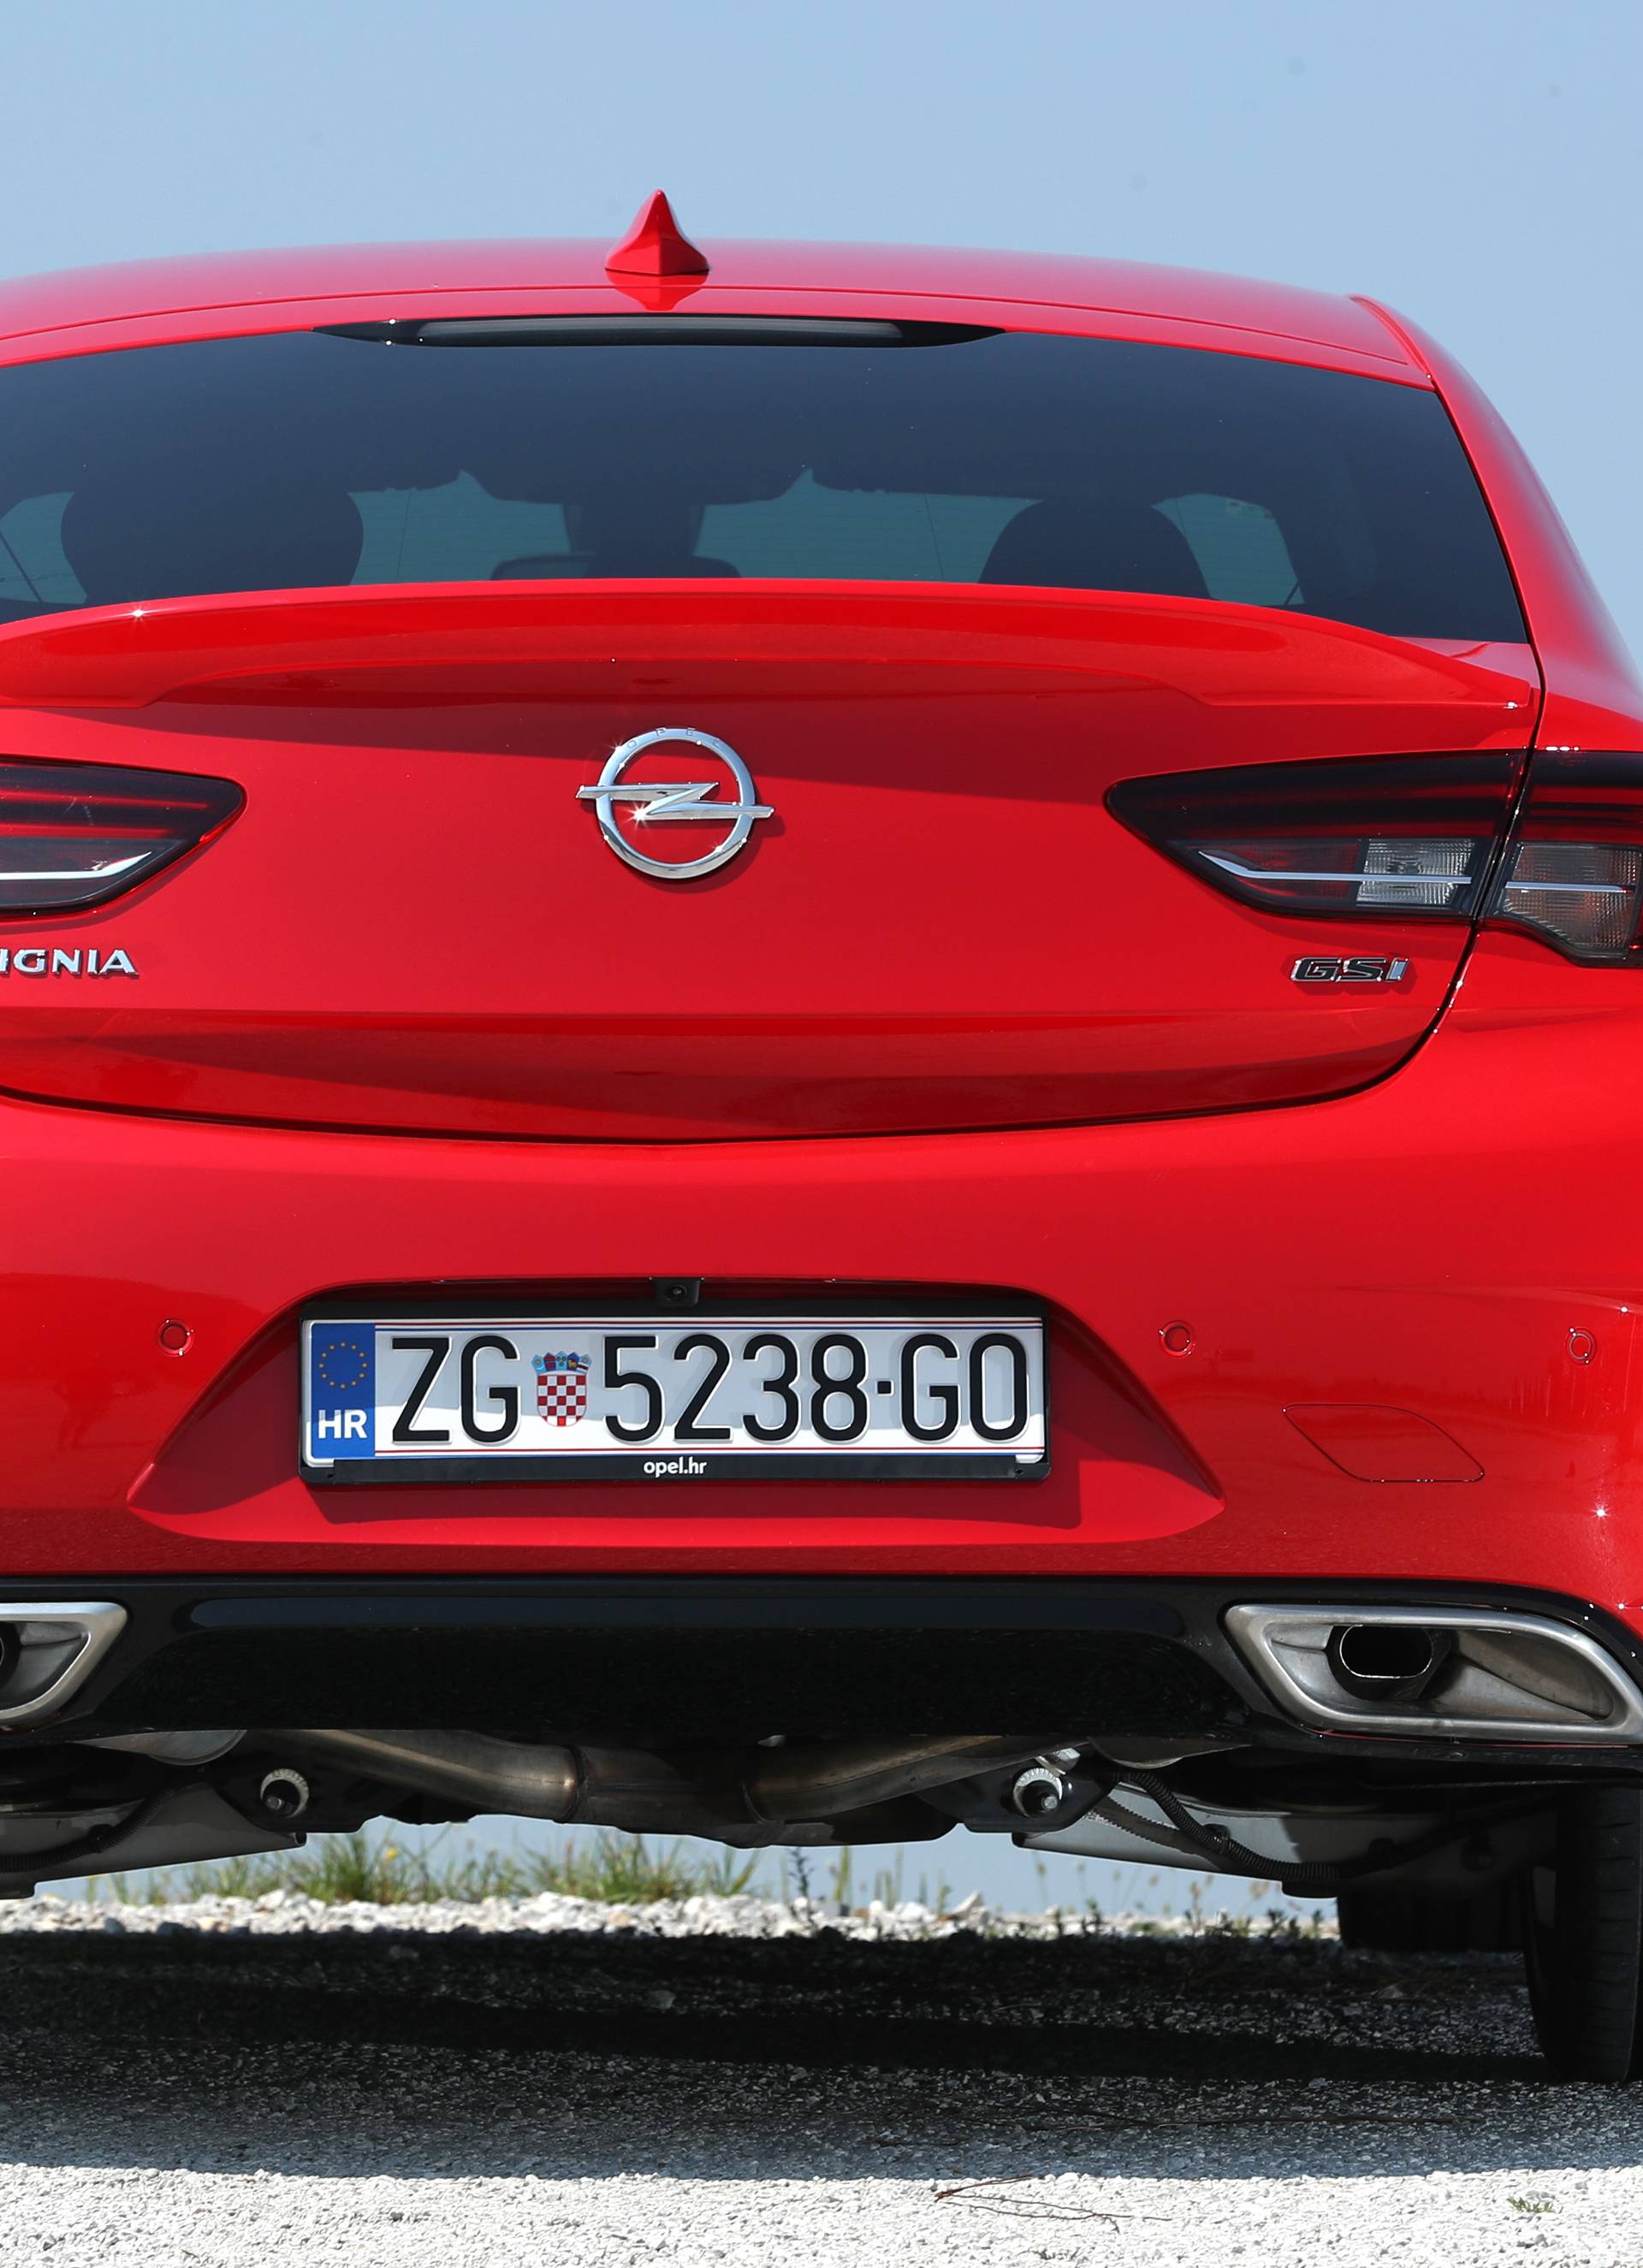 Opel Insignia GSi: Povratak slavnog imena u velikom stilu